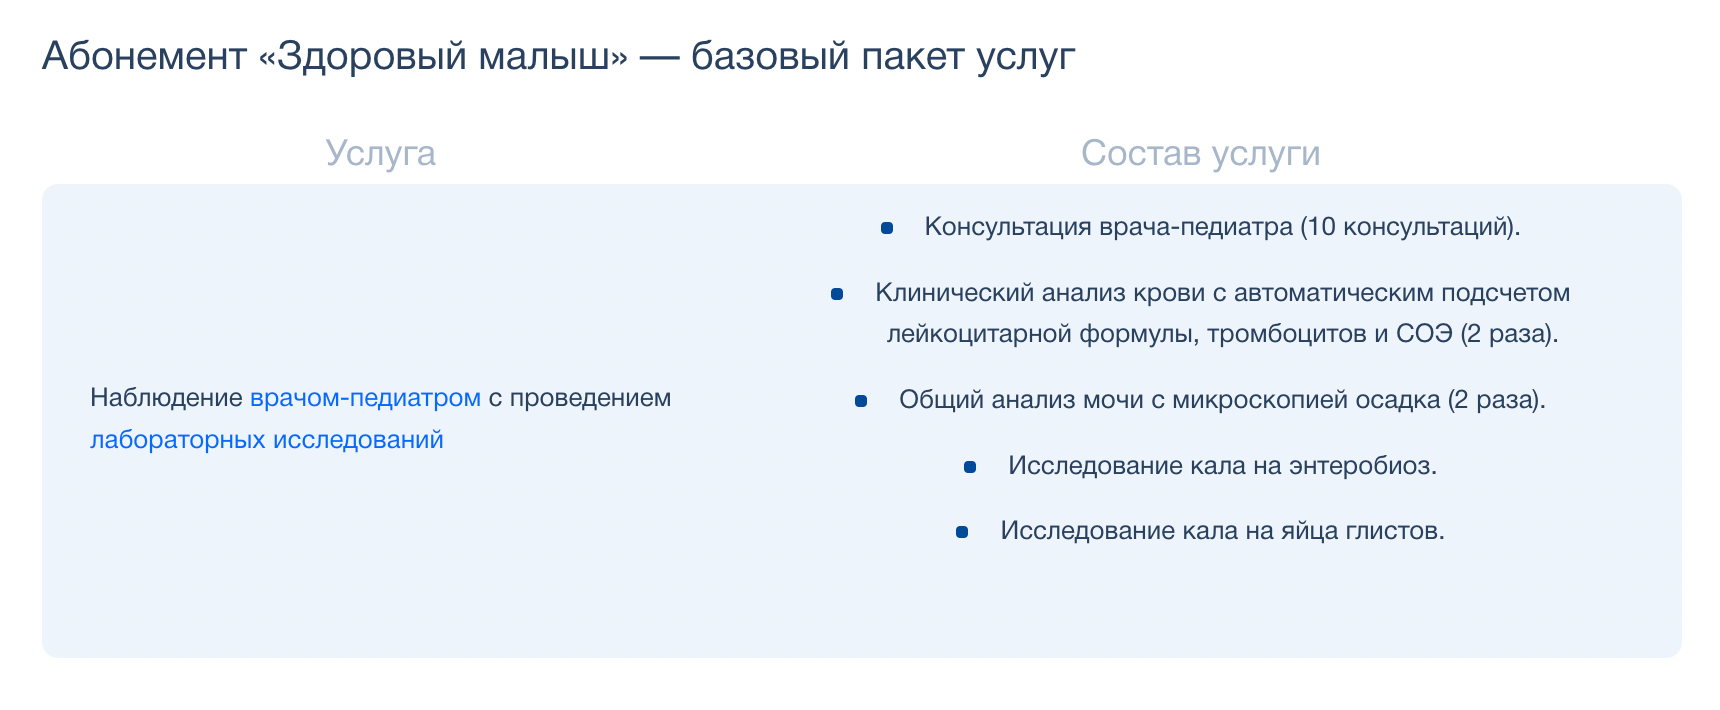 Что может входить в самую простую базовую программу детского абонемента от частной клиники. Источник: medi.spb.ru